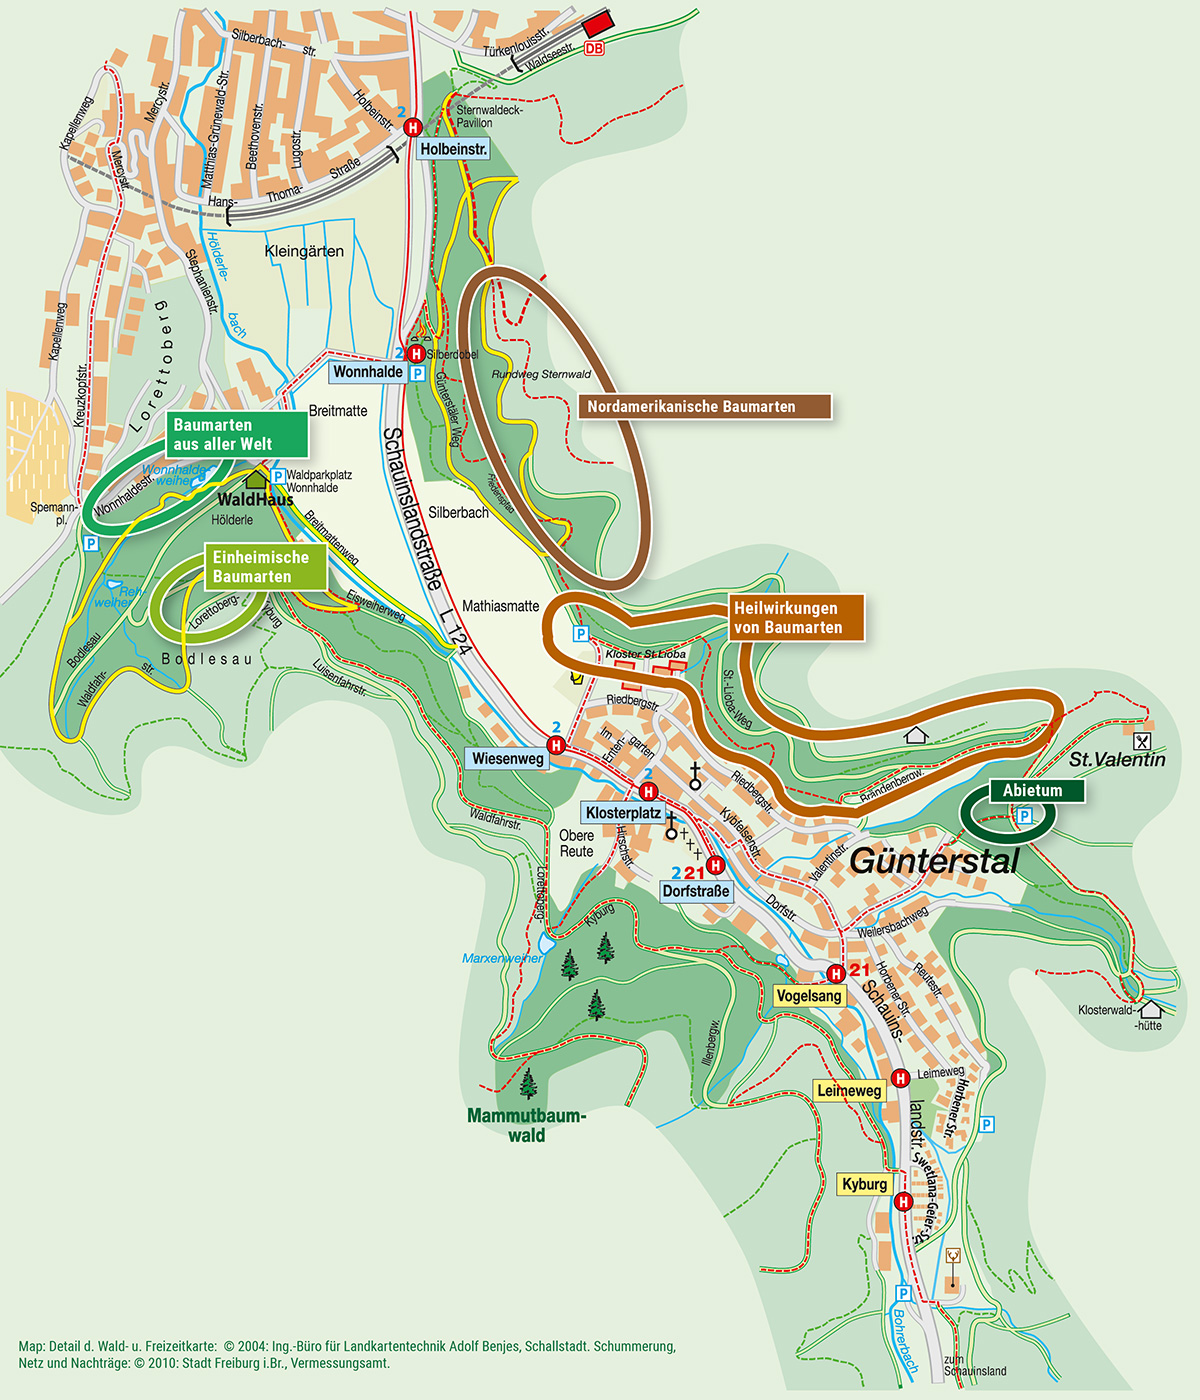 Kartenausschnitt mit dem Arboretum